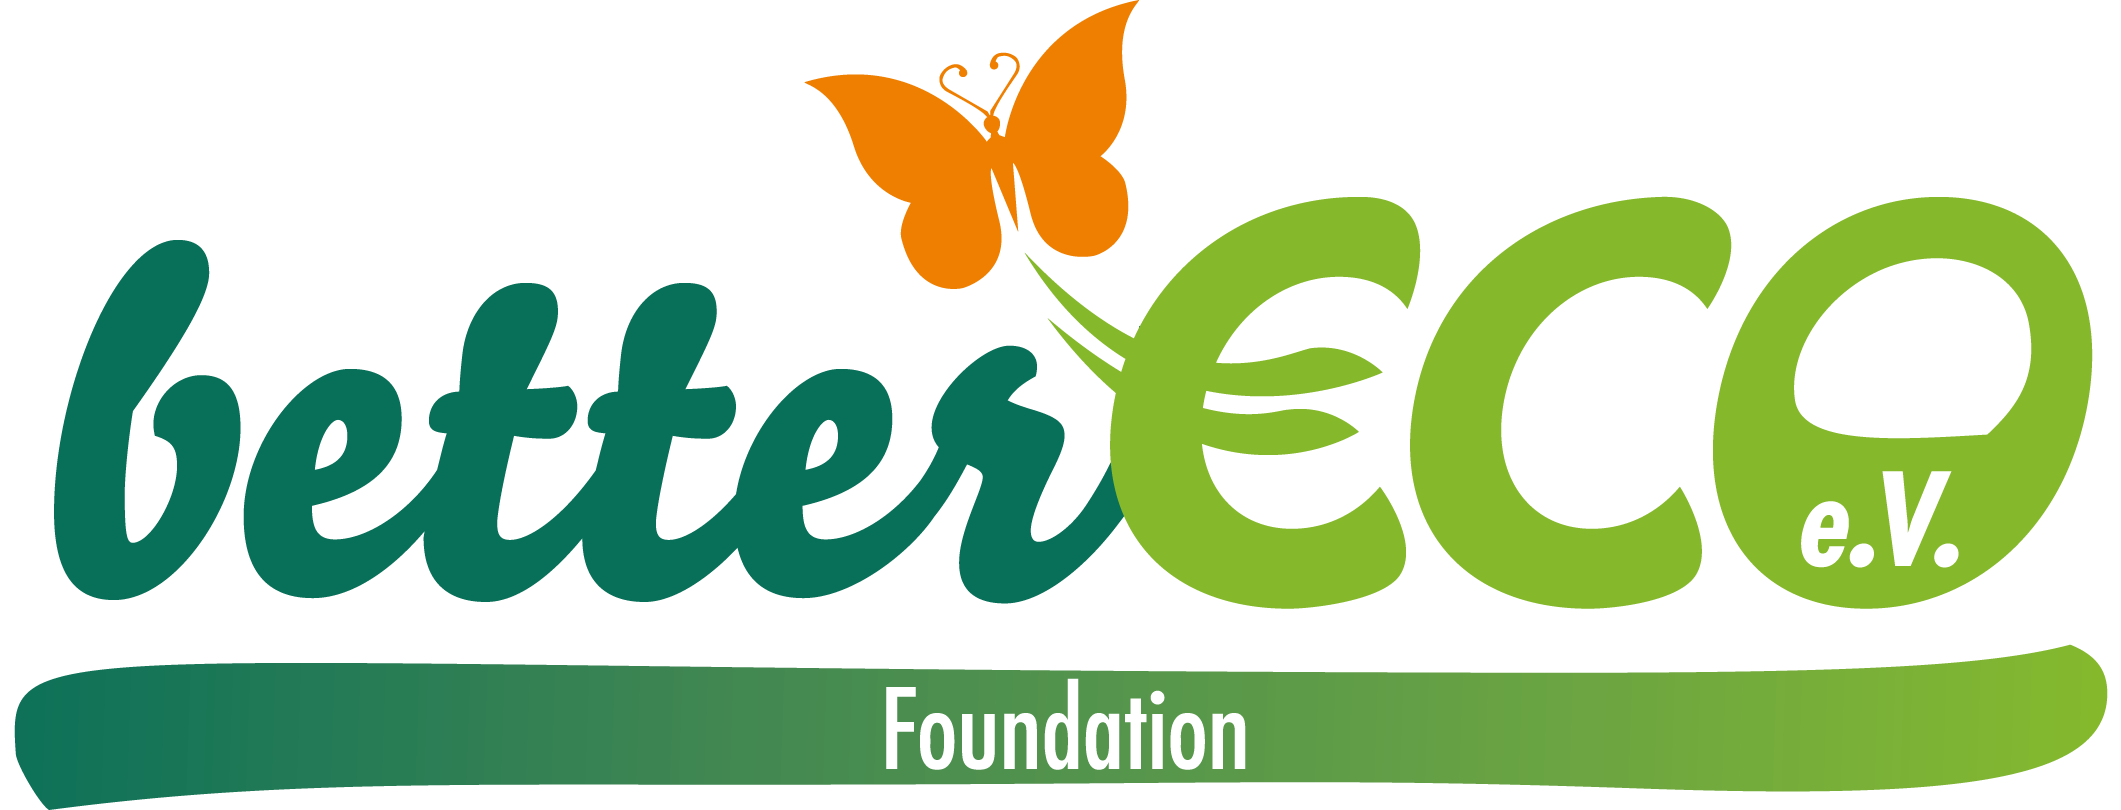 betterECO Foundation e.V.